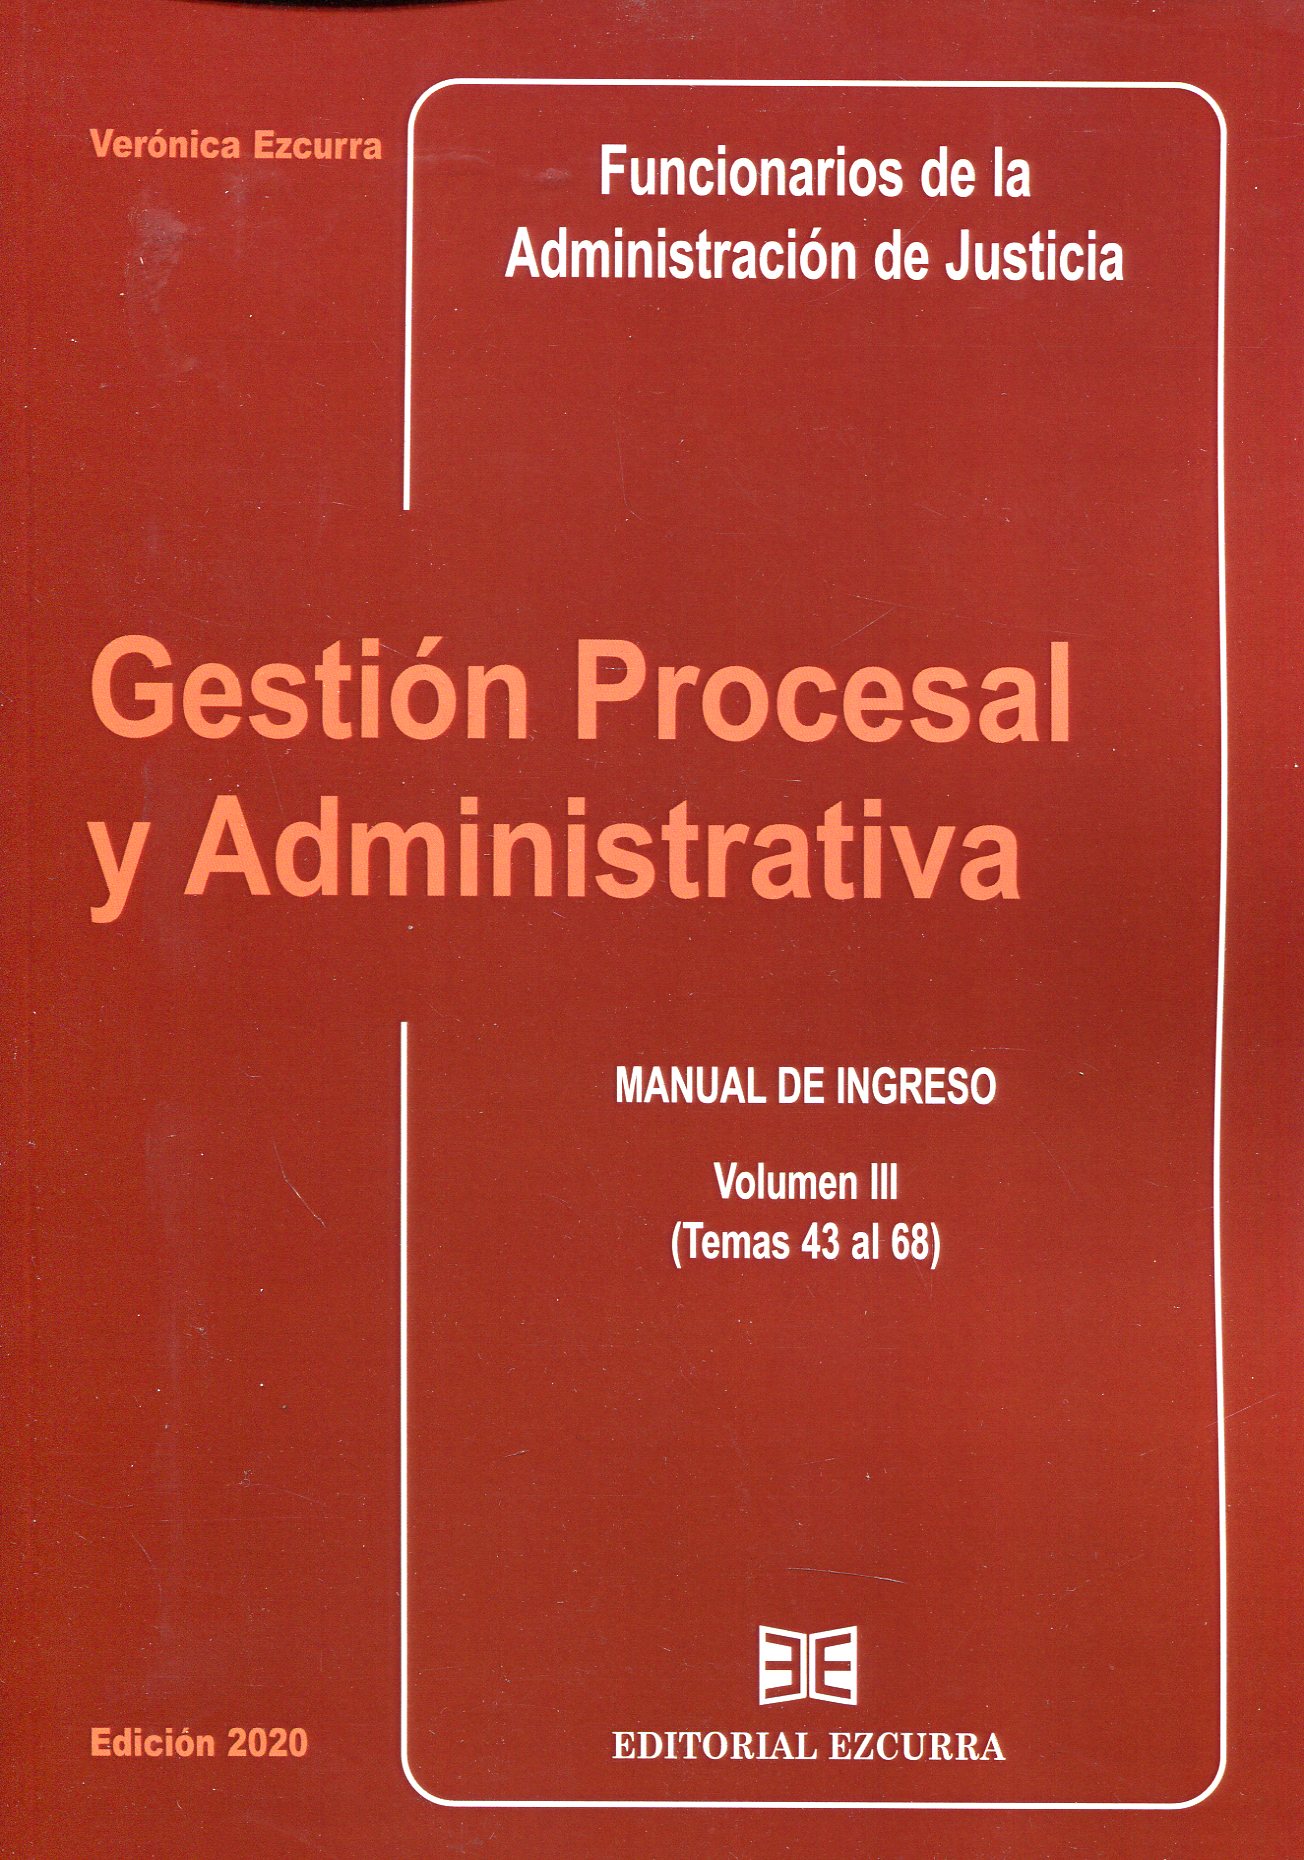 Gestión procesal y administrativa para Funcionarios de la Administración de Justicia